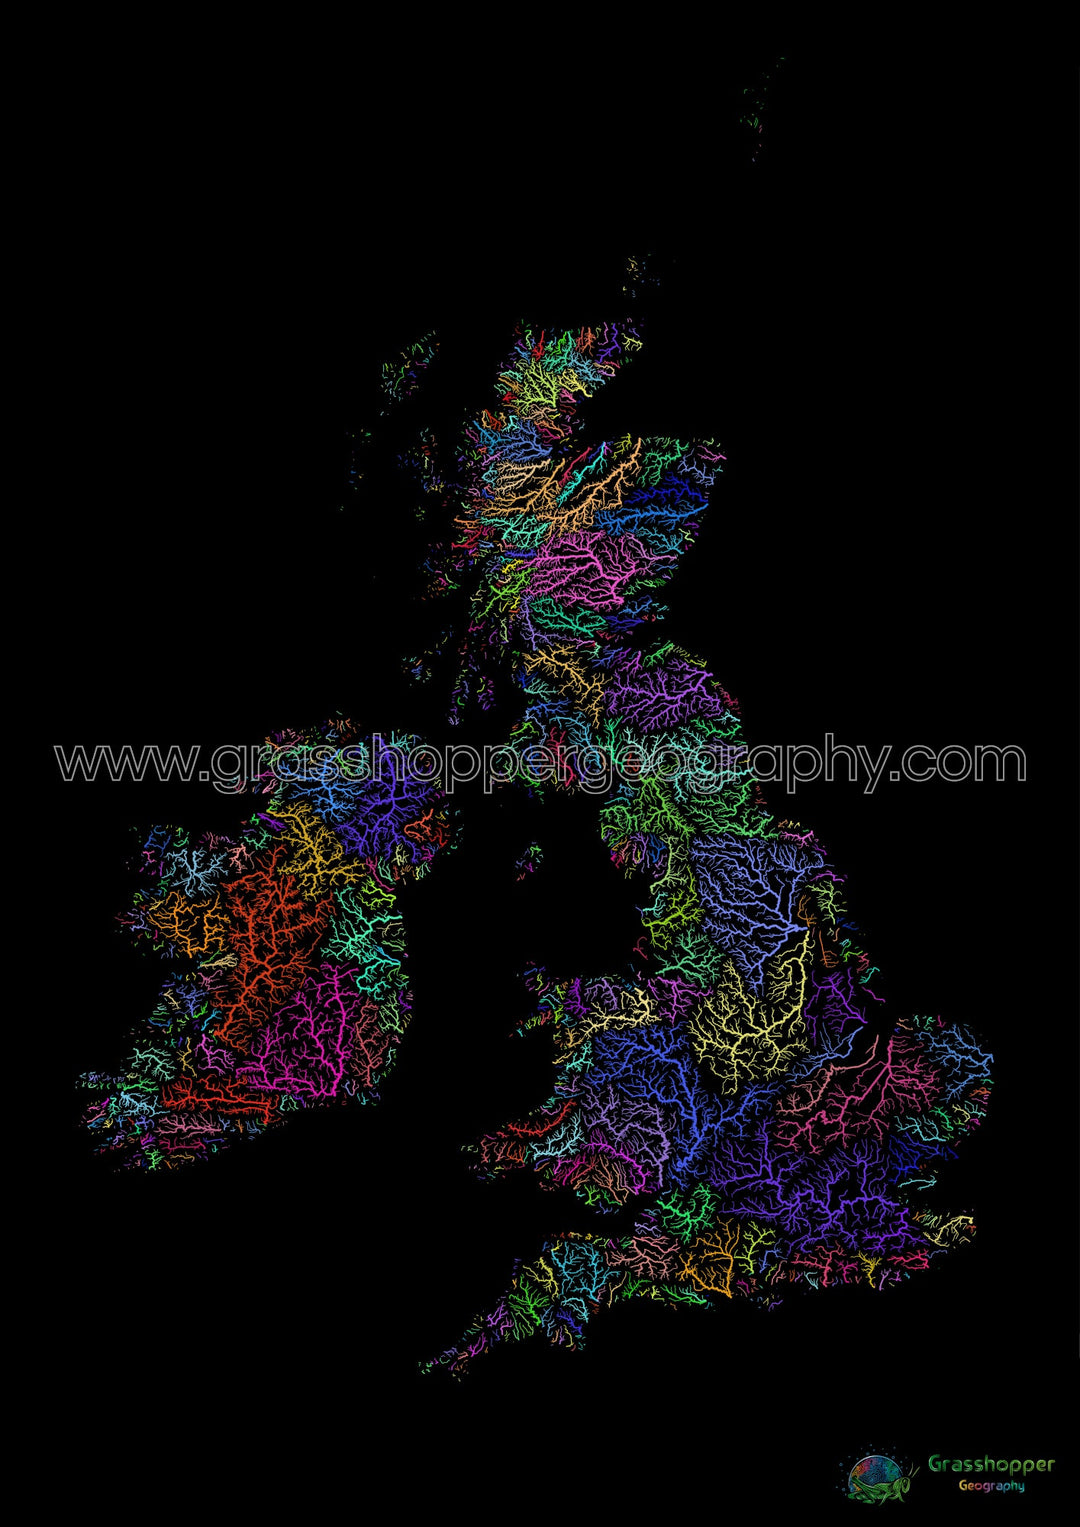 Las Islas Británicas - Mapa de la cuenca fluvial, arco iris sobre negro - Impresión de Bellas Artes